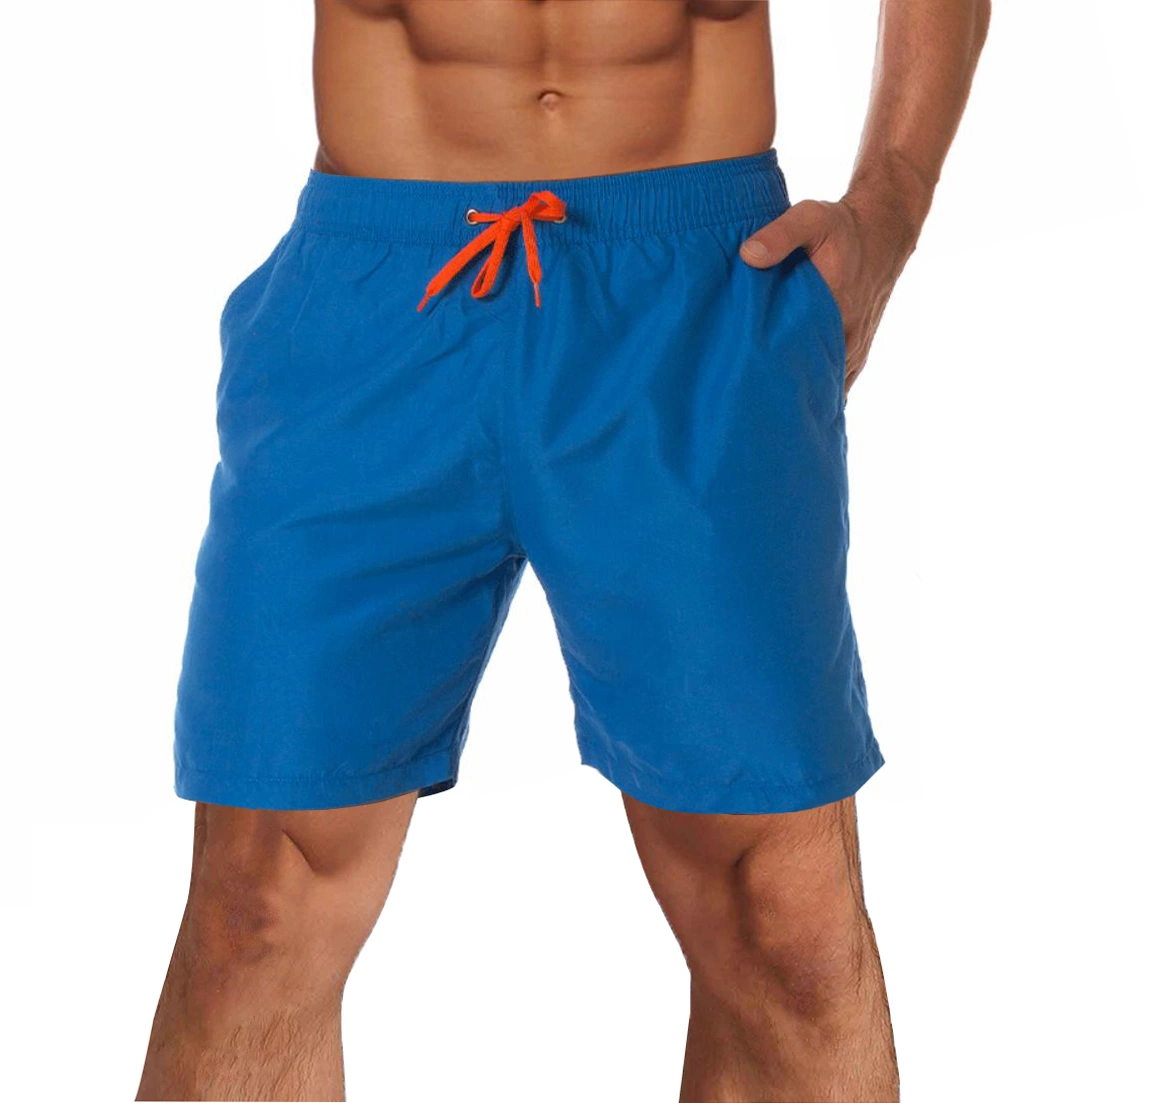 Спортивные шорты Man Mesh от Summer Swim Beach с фирменным логотипом оптом